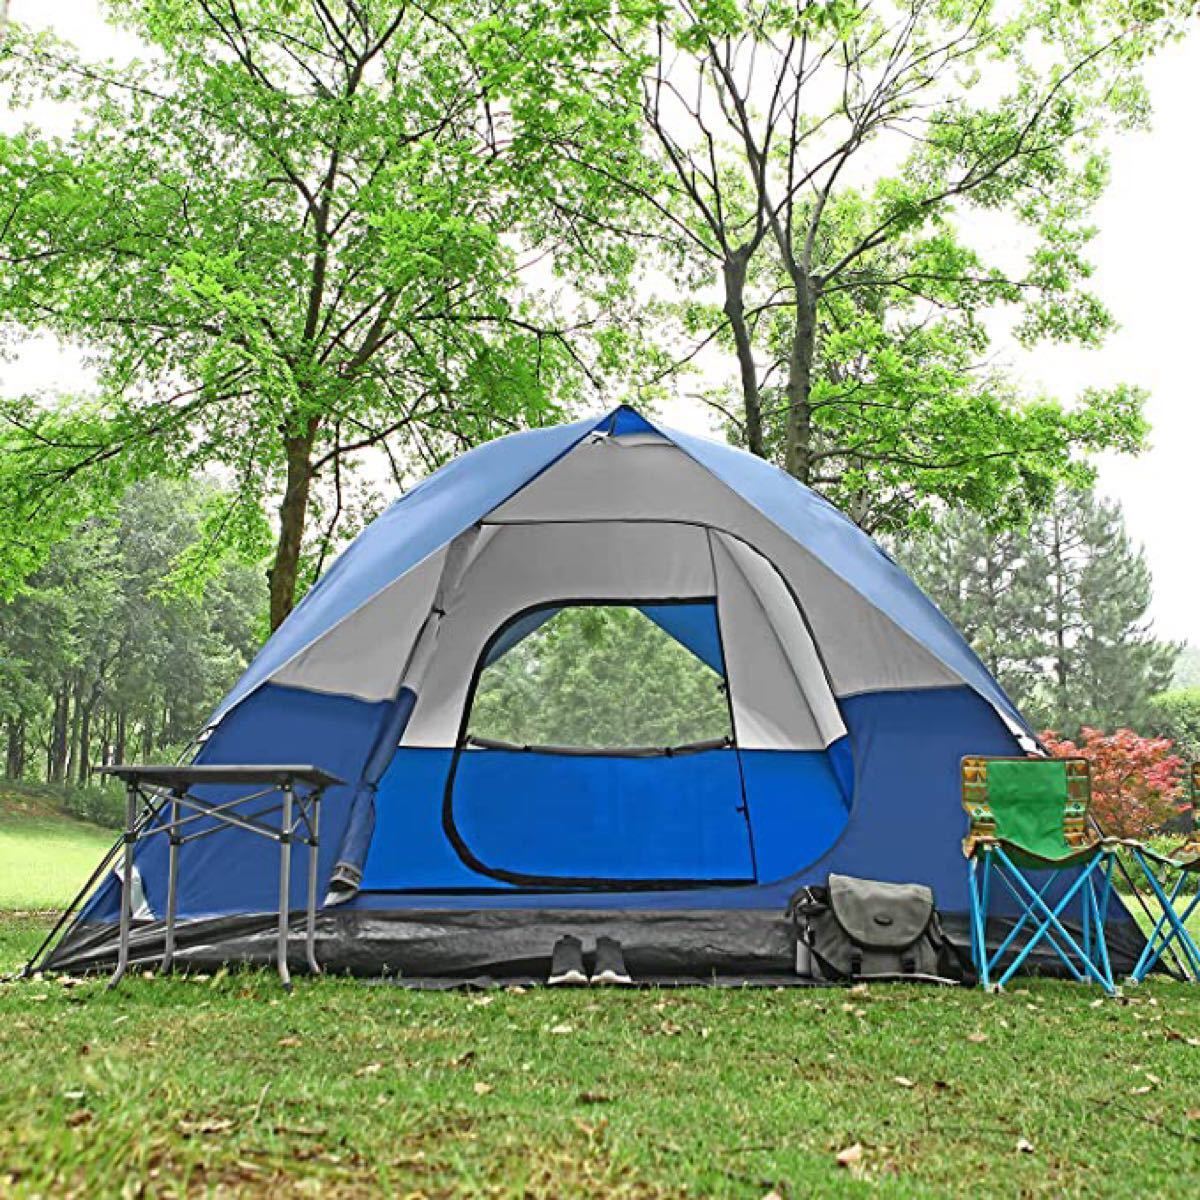 ★大特価★新品★テント アウトドア用 自立式 二重層 コンパクトハイキング 4人用テント ブルー 青 ワンタッチテント